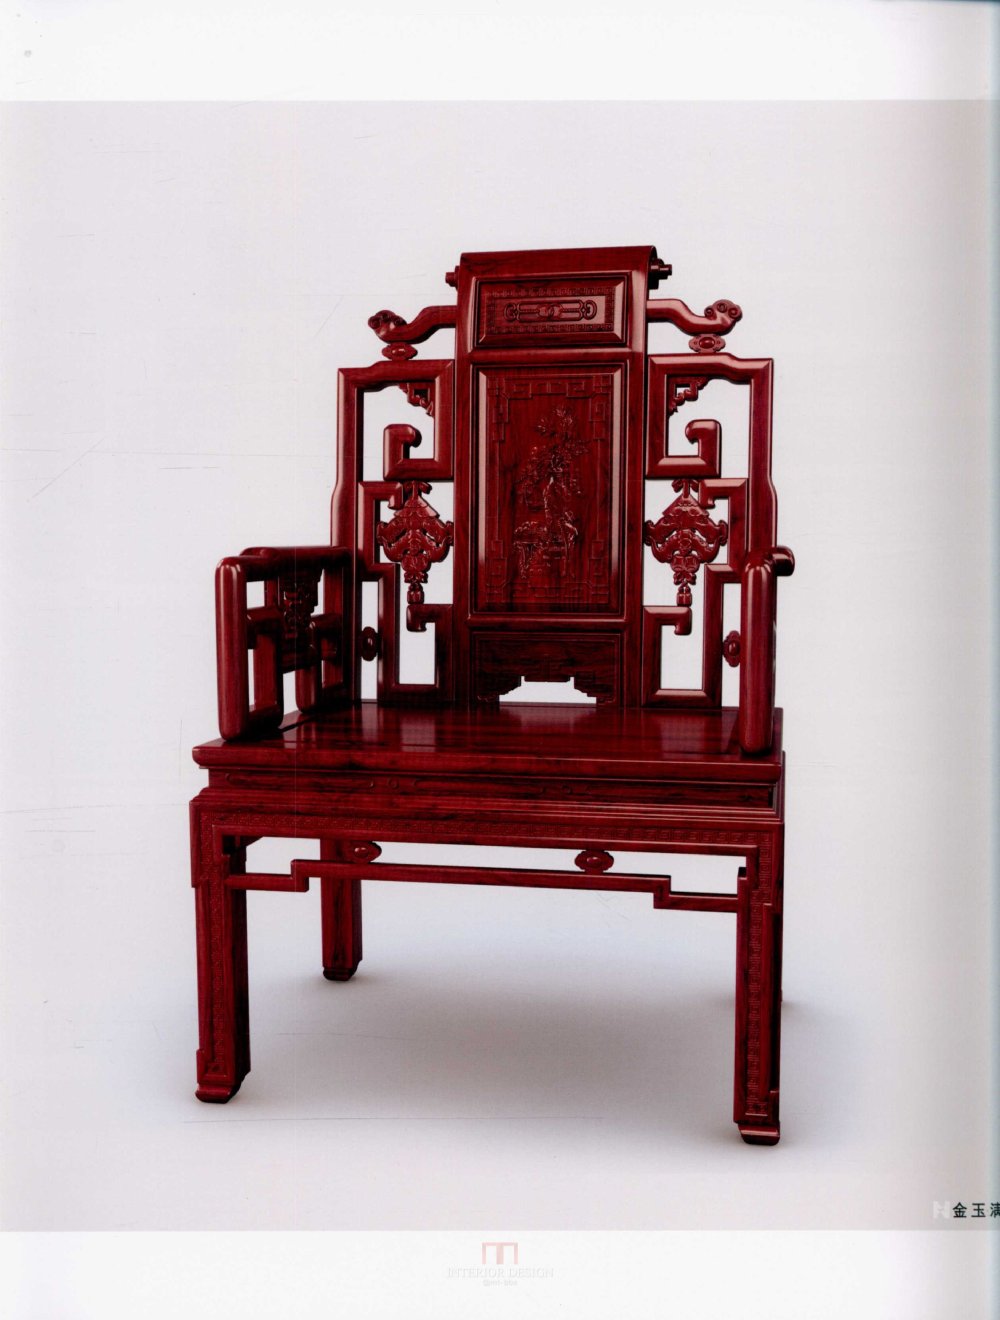 中国红木家具设计制作上卷_kobe 0012.jpg